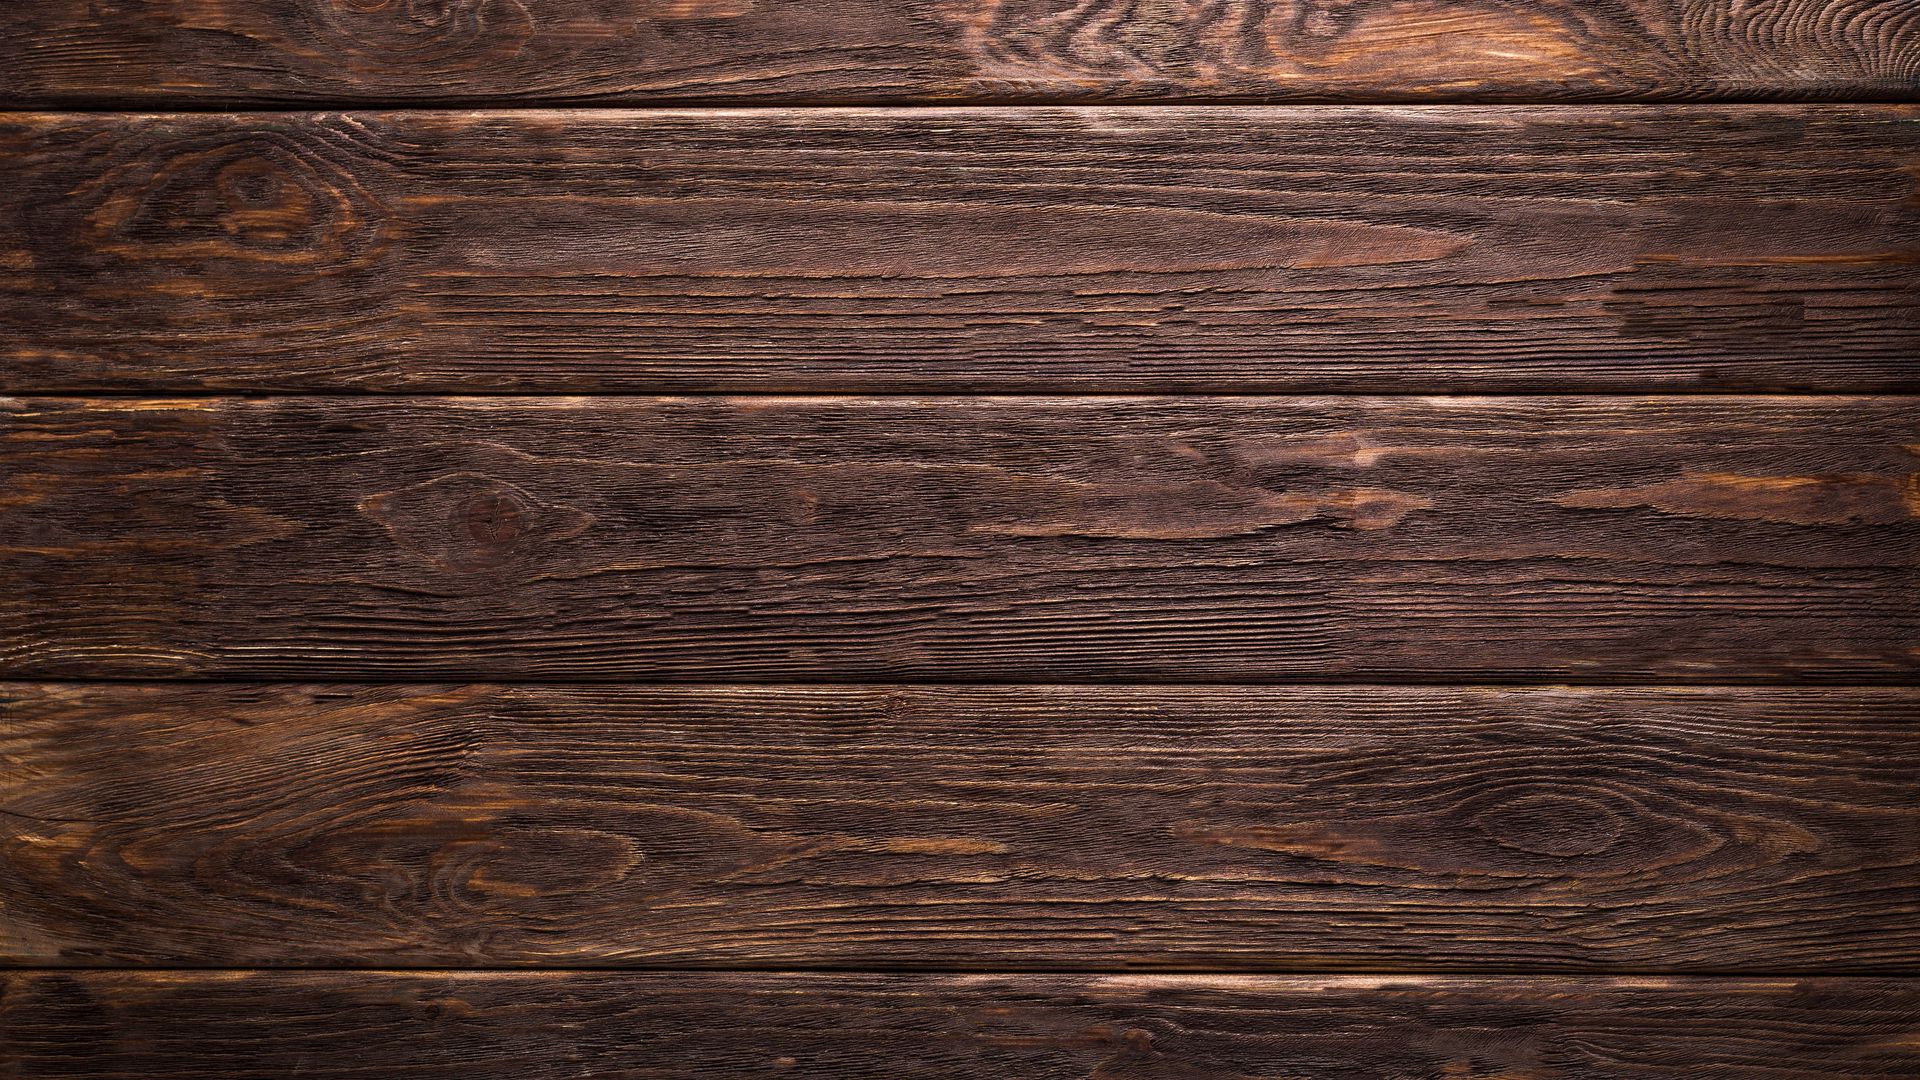 Hình nền gỗ vân, mặt, ván đầy đủ - Chúng tôi tự hào mang đến cho bạn bộ sưu tập hình nền gỗ đầy đủ với các mẫu vân và mặt đa dạng, cho bạn sự lựa chọn phong phú và độc đáo. Bạn sẽ có một máy tính thật sự nổi bật với hình nền gỗ từ chúng tôi.